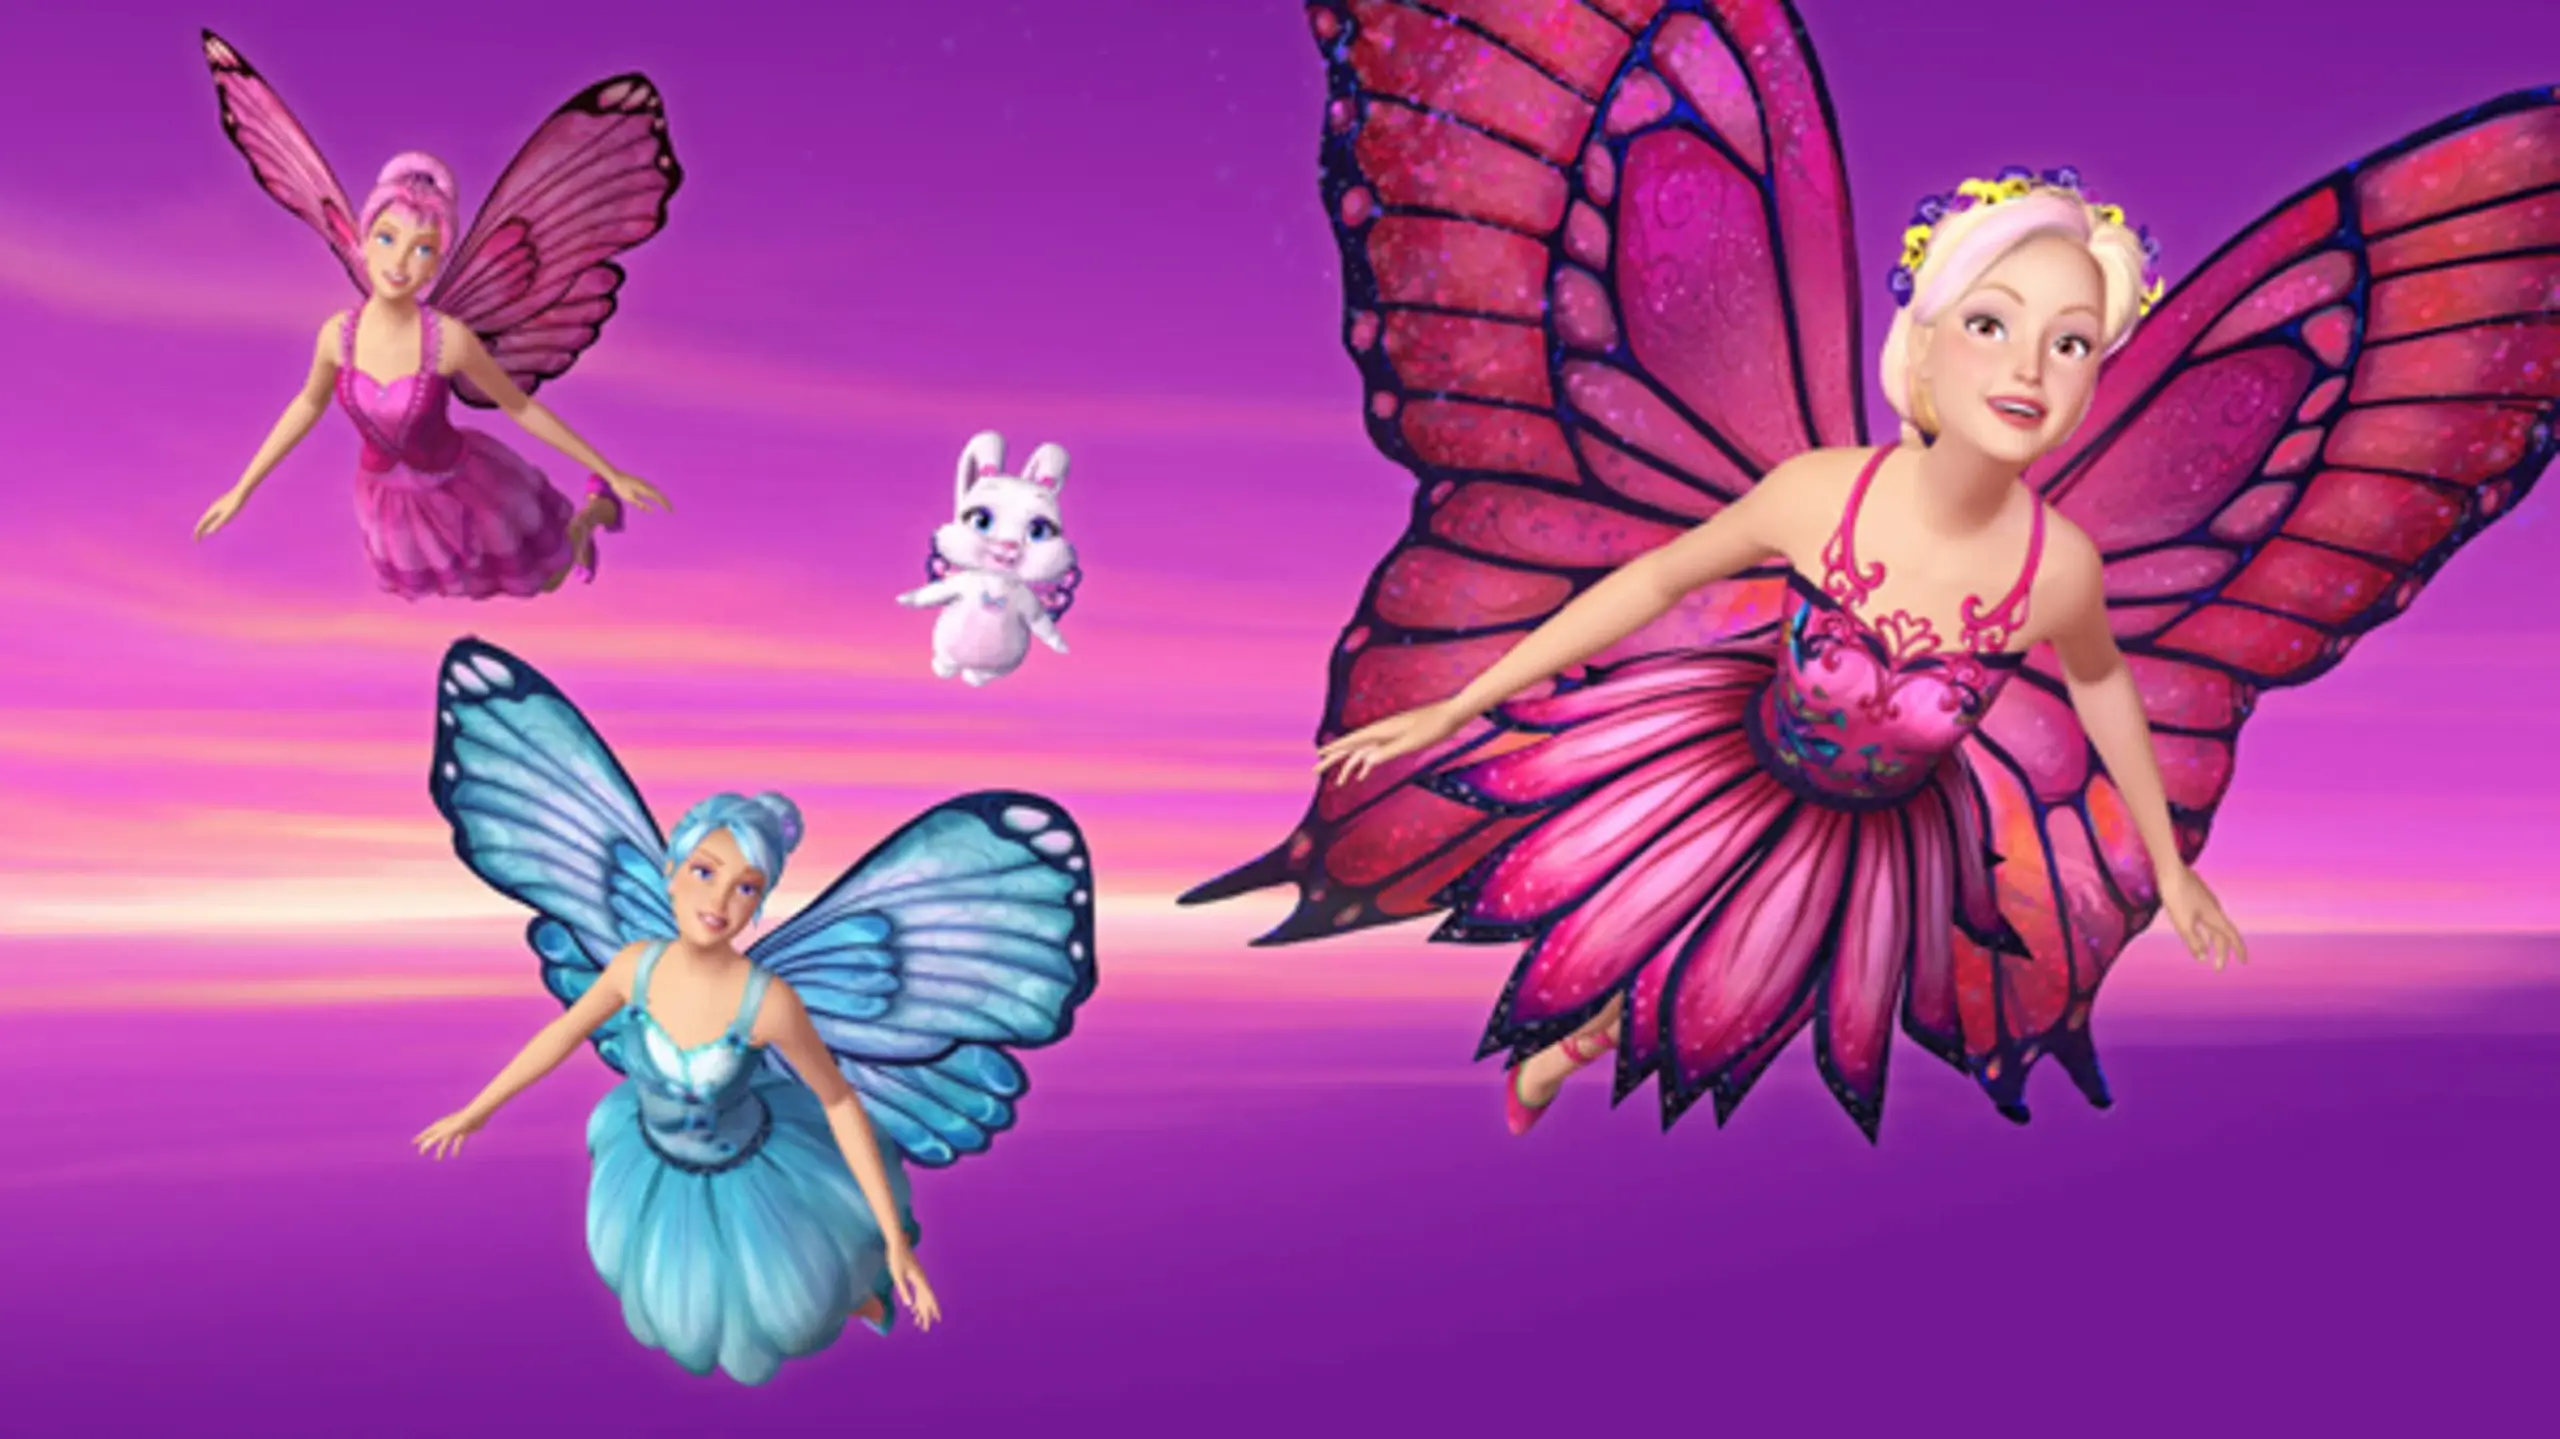 Barbie - Mariposa und ihre Freundinnen, die Schmetterlingsfeen